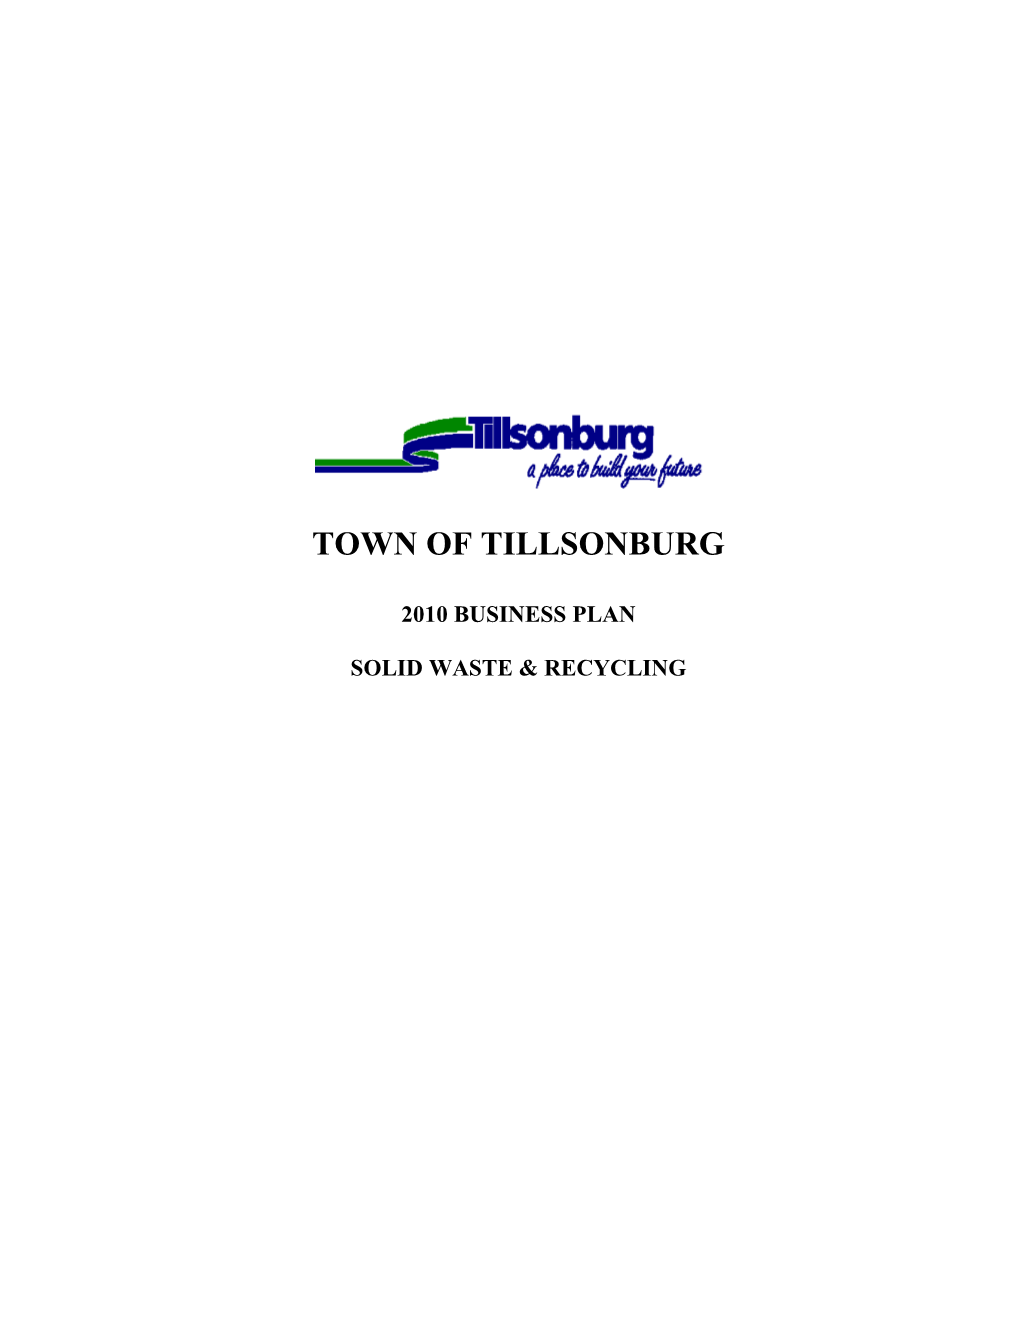 Town of Tillsonburg